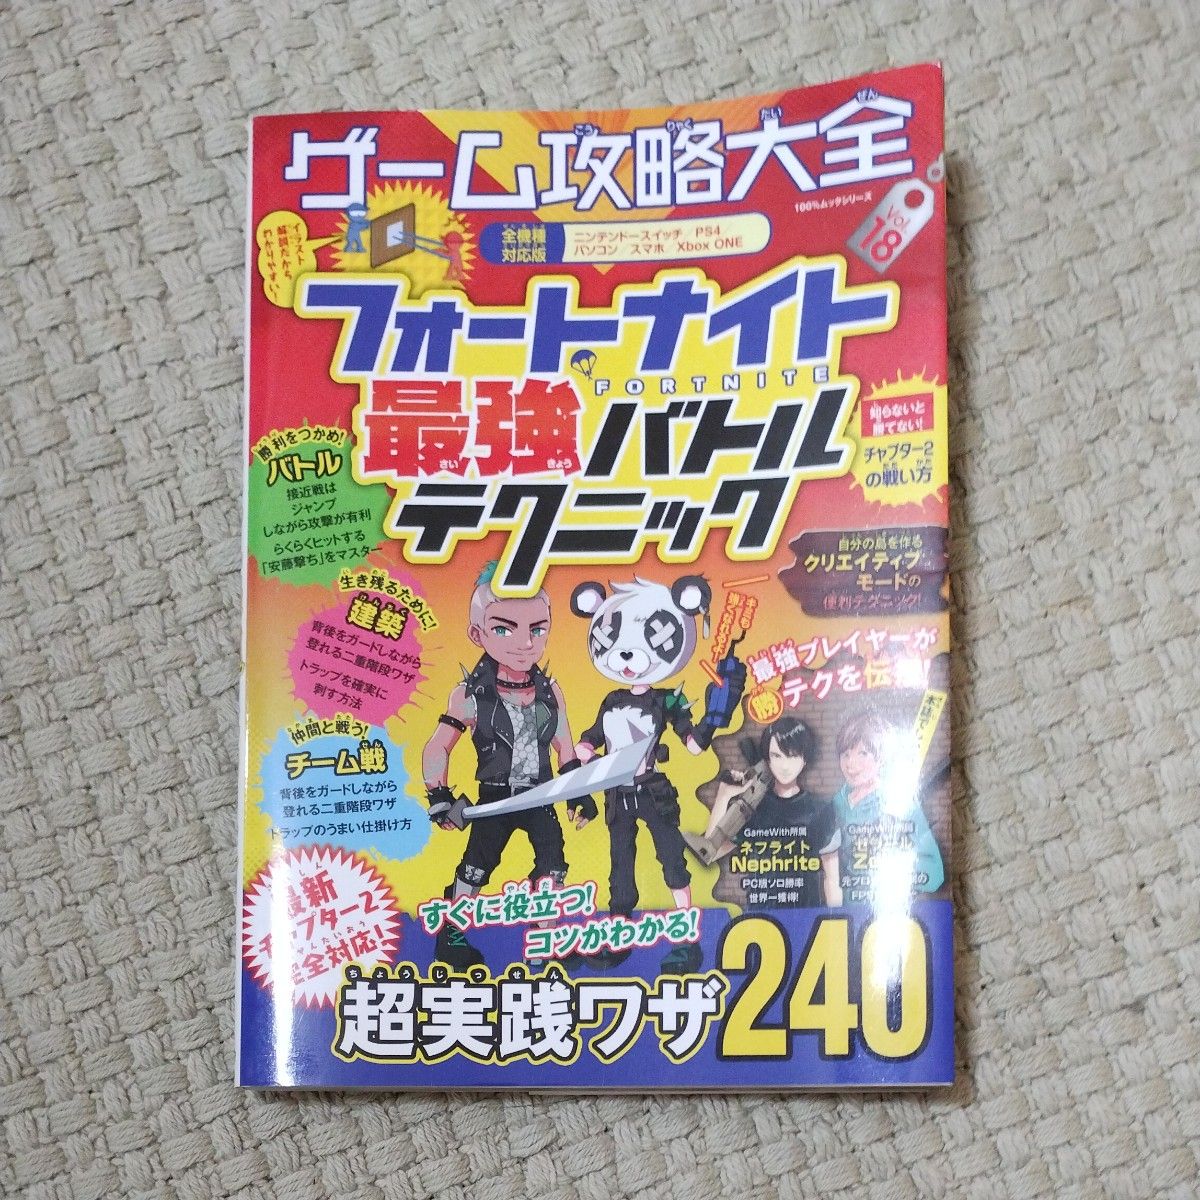 ゲーム攻略大全 Vol.18 (100%ムックシリーズ) フォートナイト最強バトルテクニック